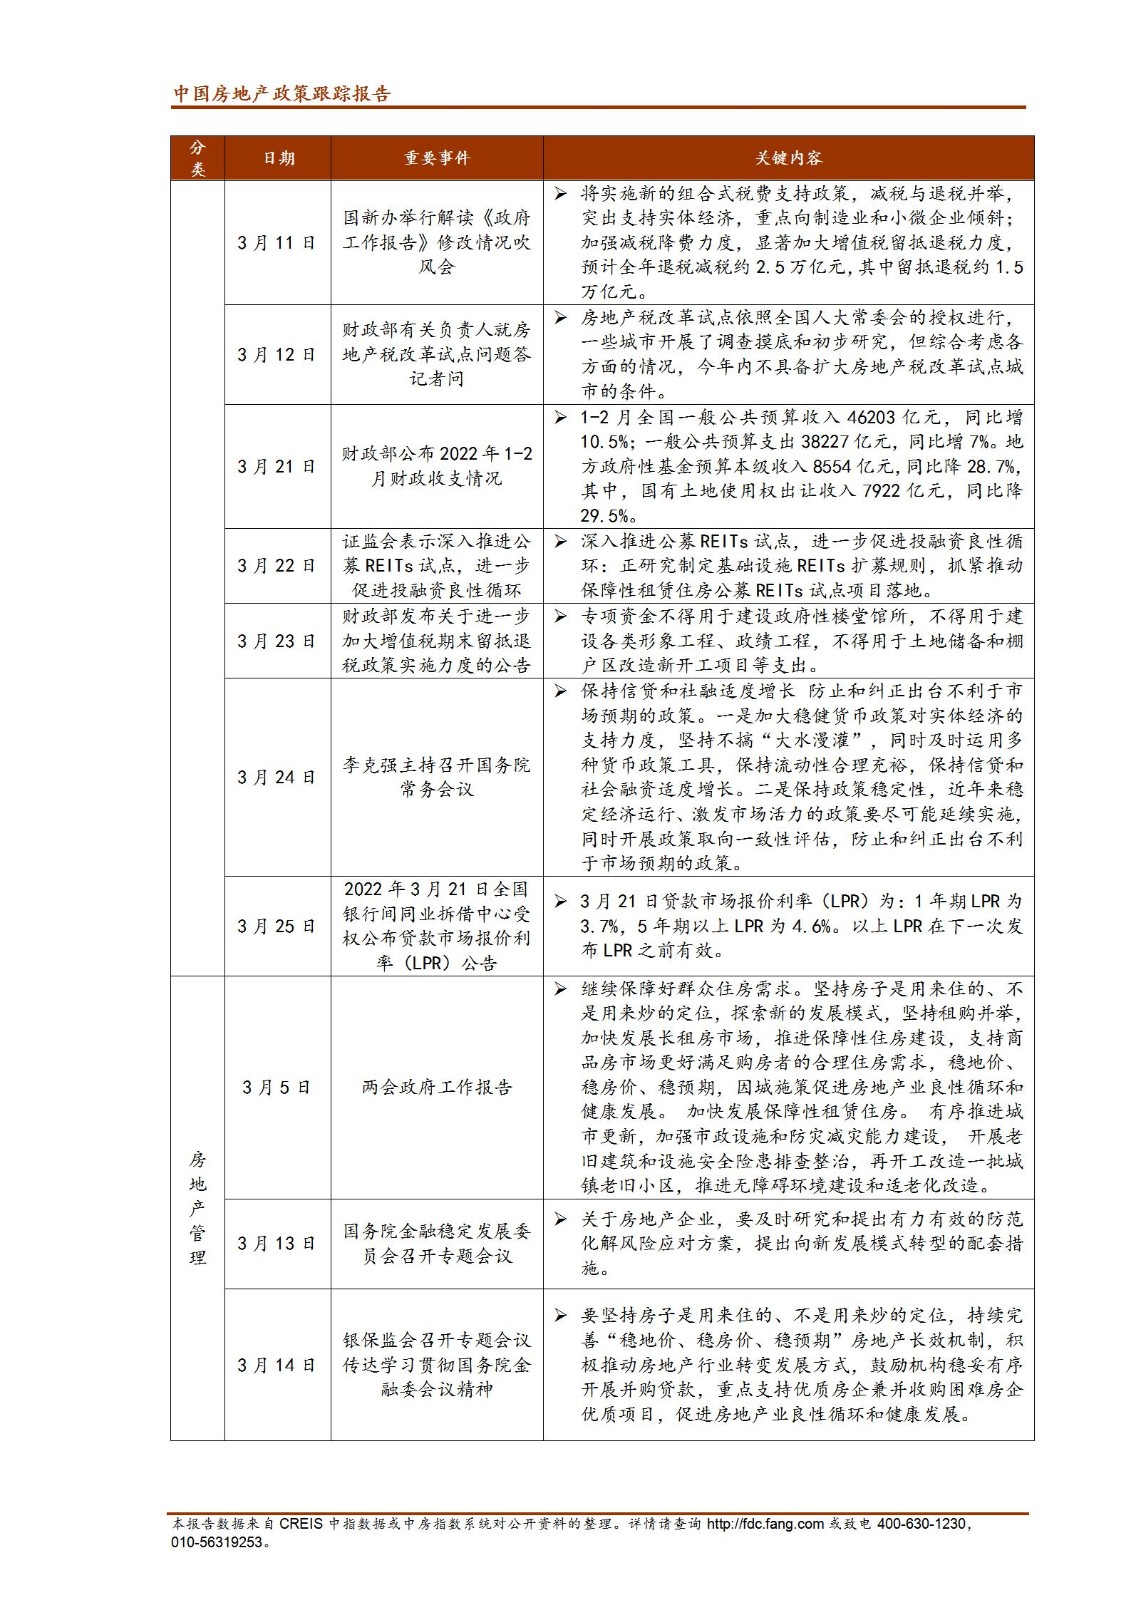 《中指丨中国房地产政策跟踪报告（2022年3月）》_02.jpg